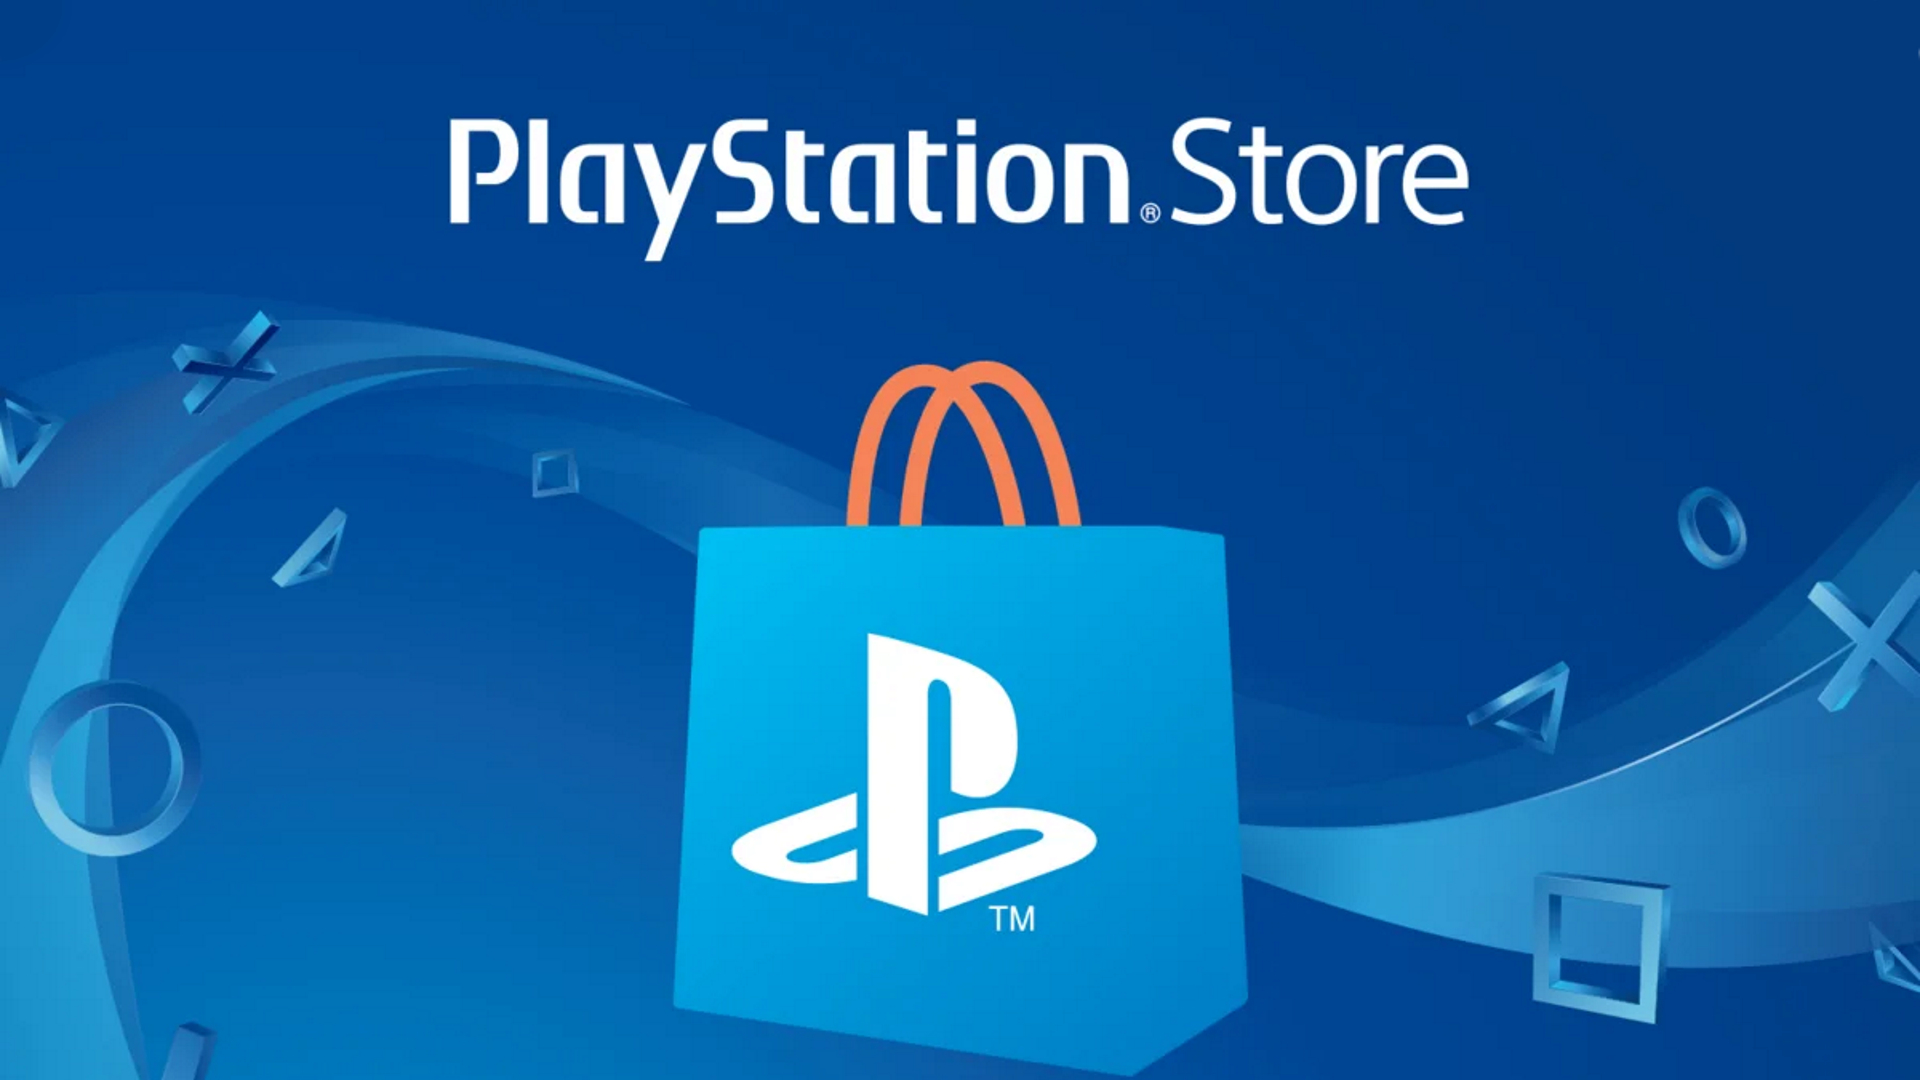 Как купить игры в PSN | PS store | Playstation Store на PS4